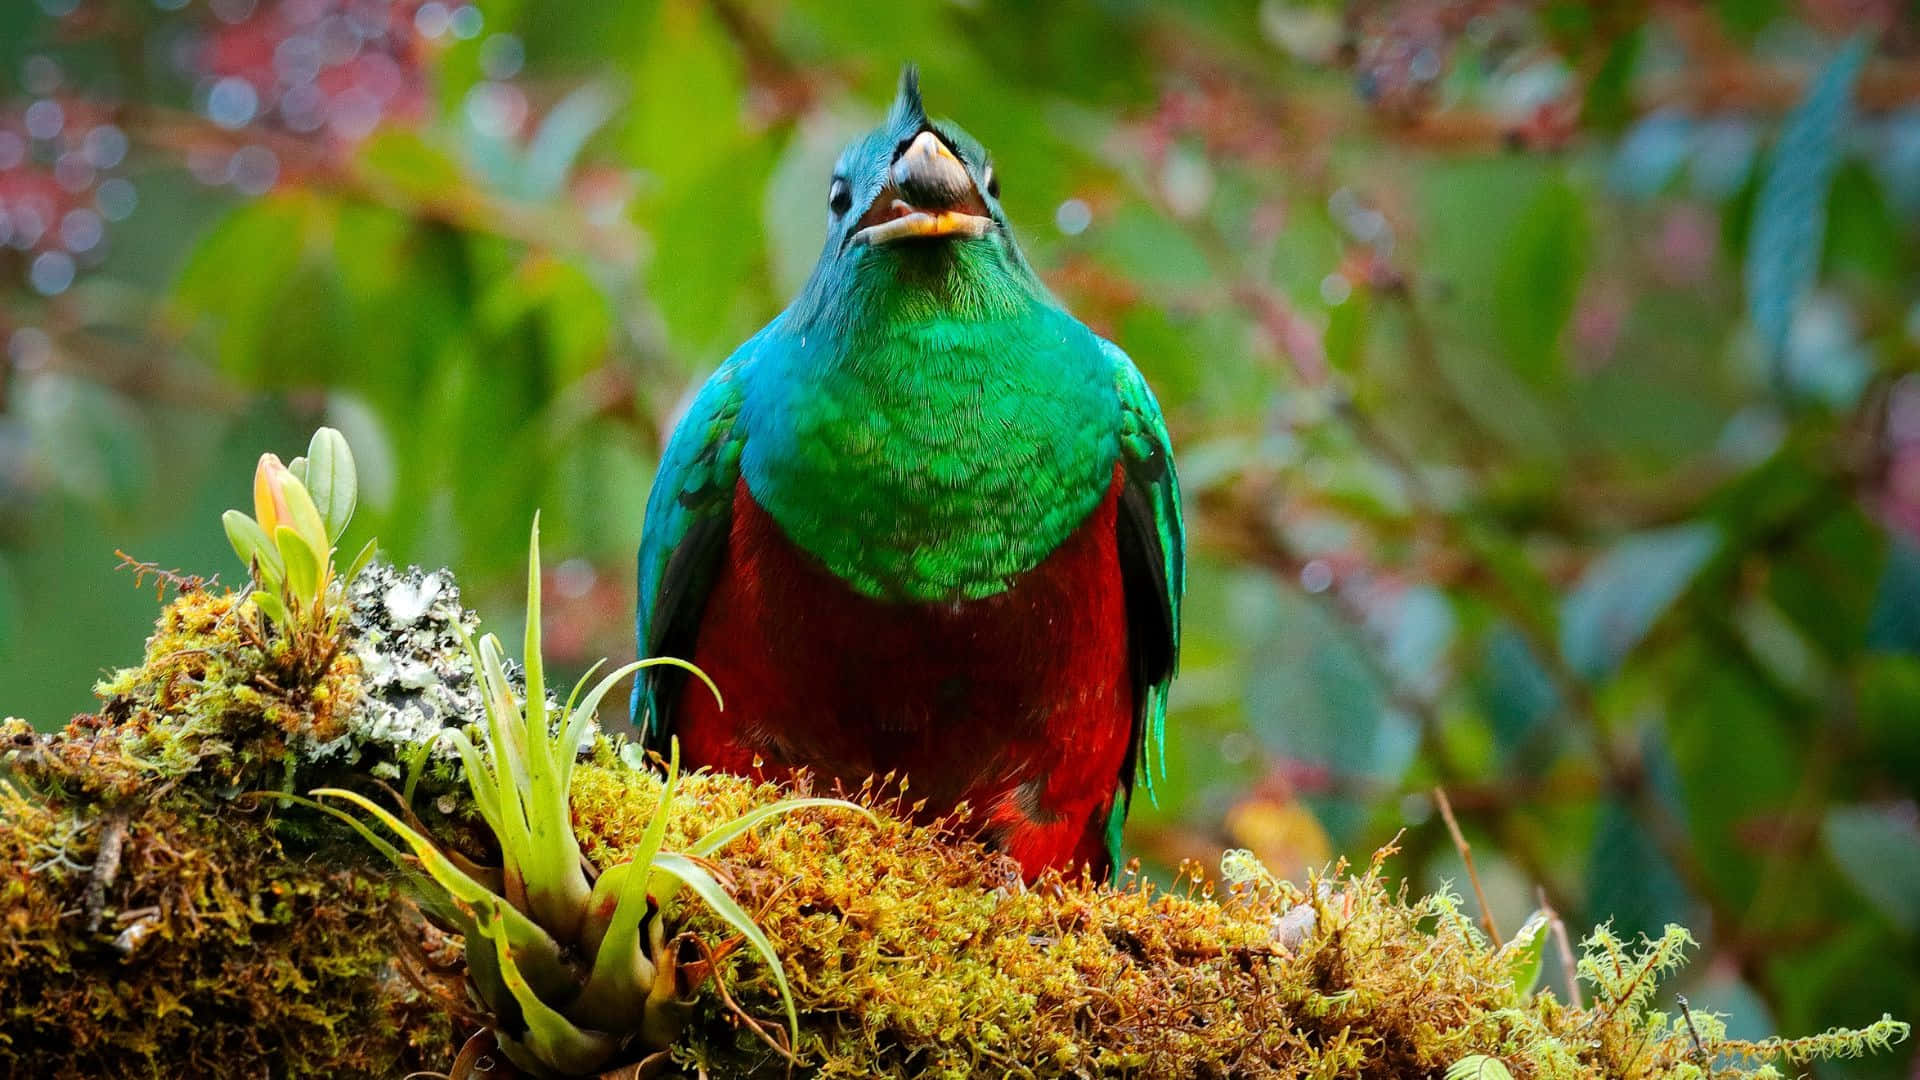 Vibrant Quetzalin Natural Habitat.jpg Wallpaper